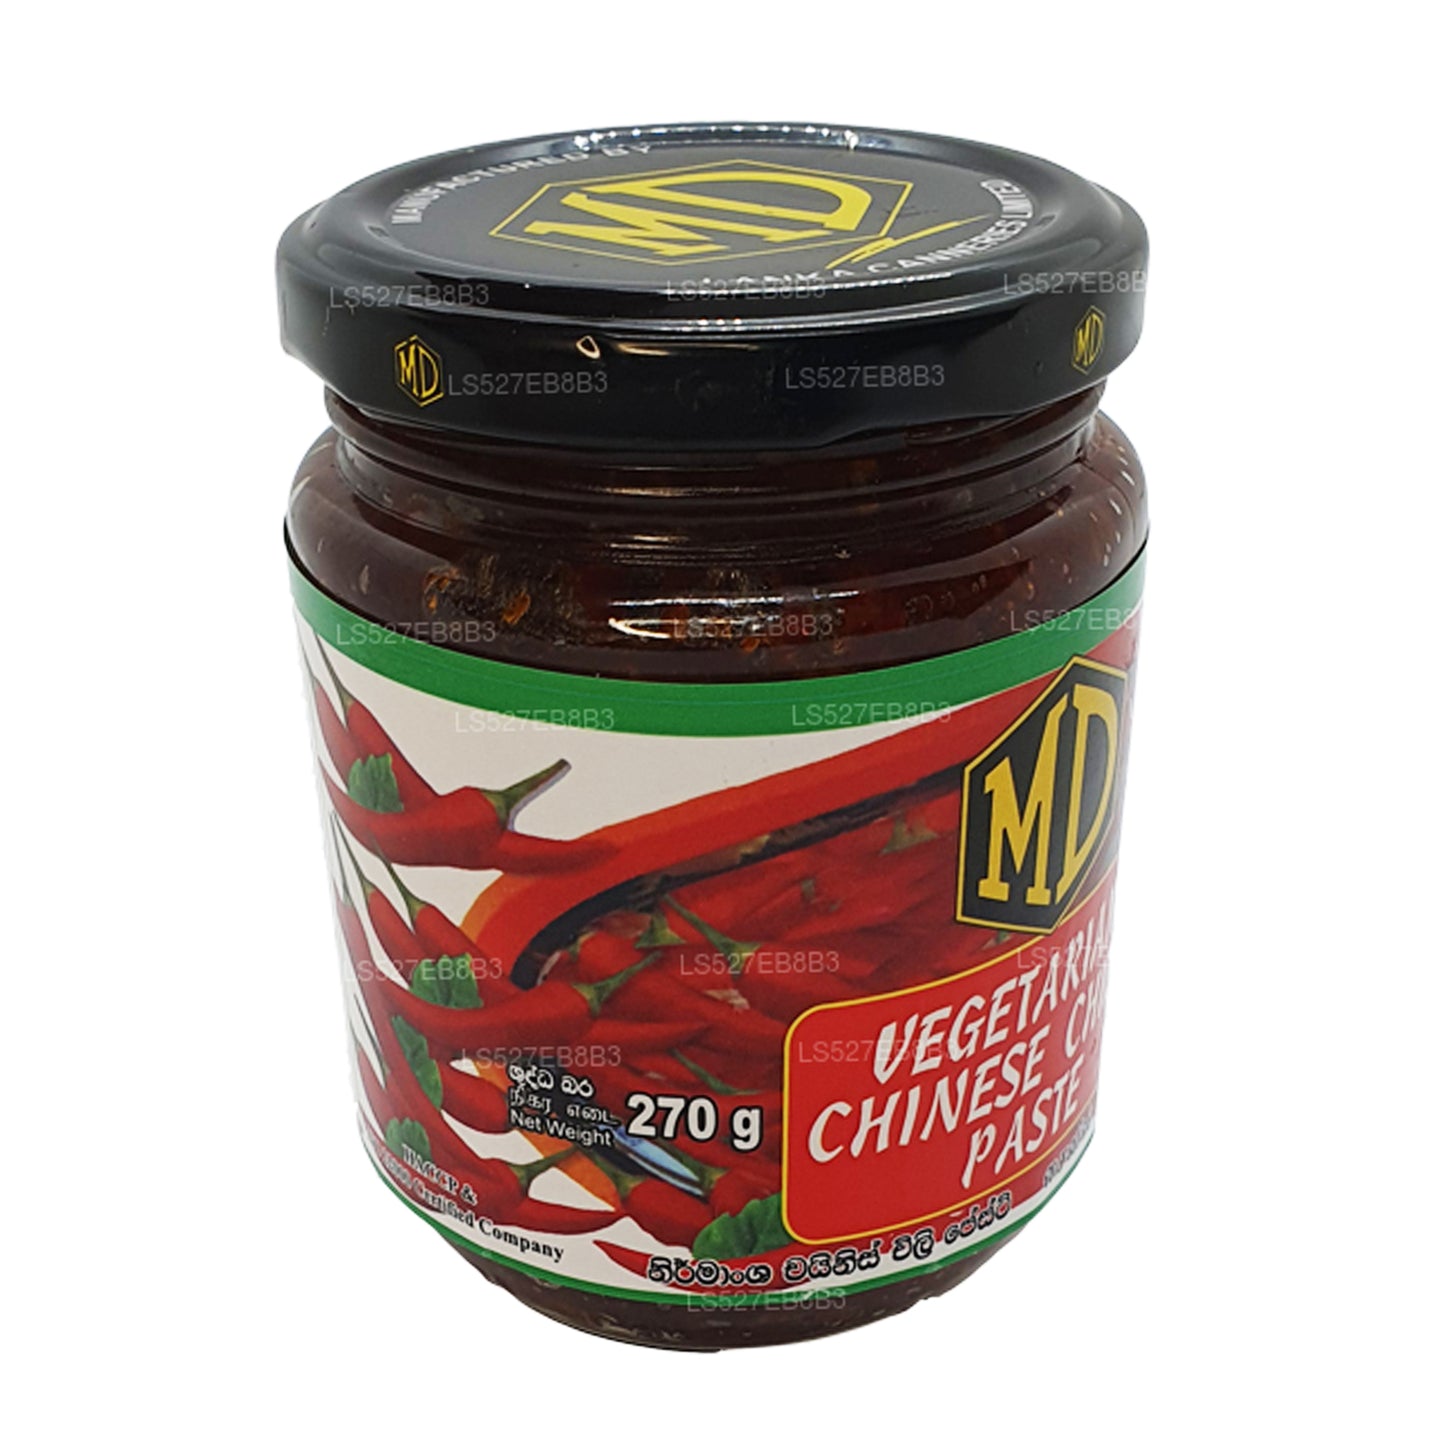 MD Vegetarische chinesische Chilipaste (270 g)